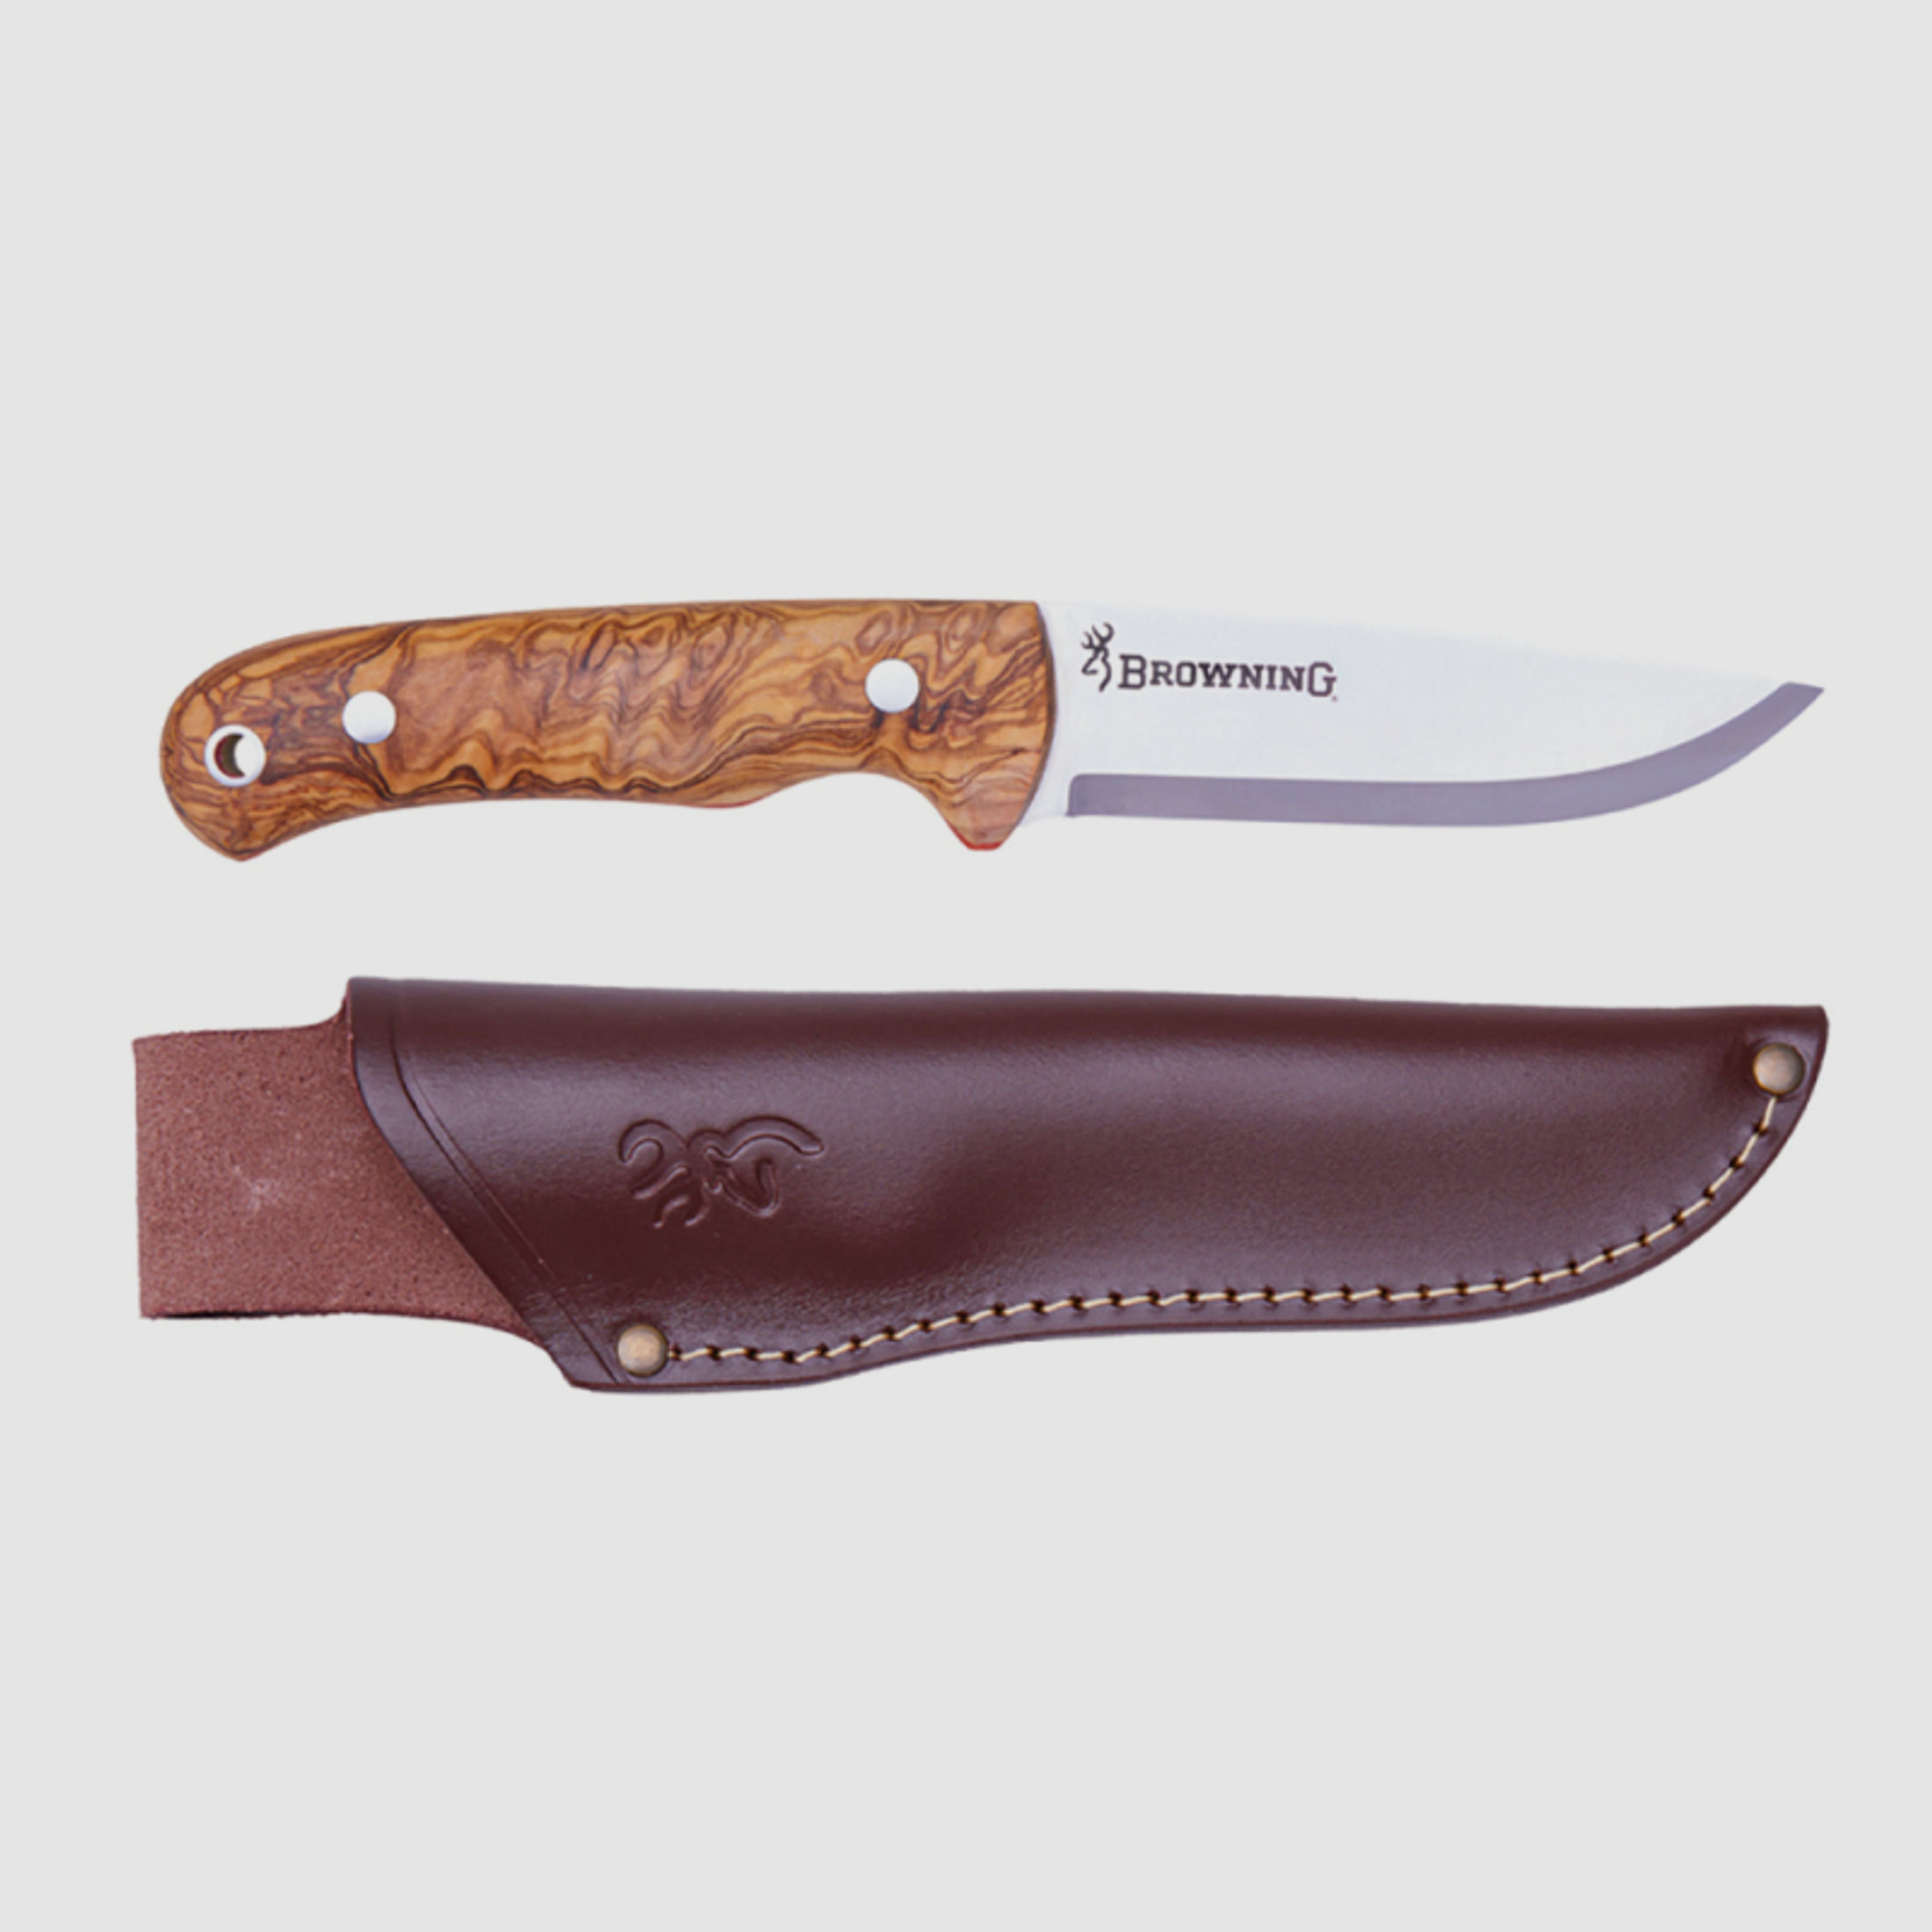 1 x Browning Messer Bjorn Olivenbaum | Jagdmesser mit Lederscheide 11cm Klinge Olivenholz Griffschal